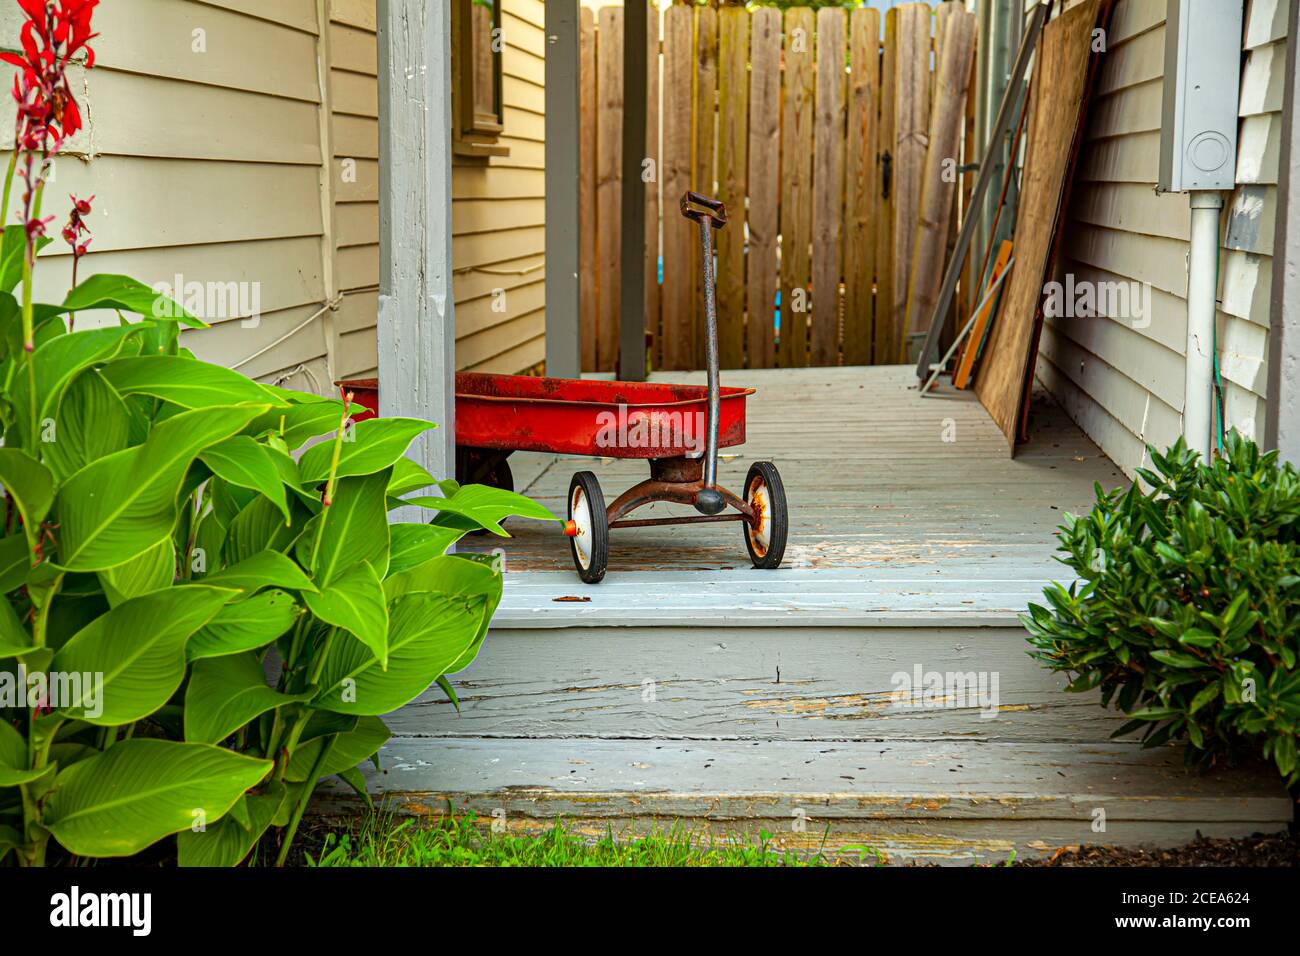 Ein roter alter rostiger Spielzeugwagen wurde an der Tür eines alten Hauses zurückgelassen. Die hölzerne Veranda das Spielzeug wurde links hat graue Farbe, die Zeichen des Alterns zeigt. Dort Stockfoto